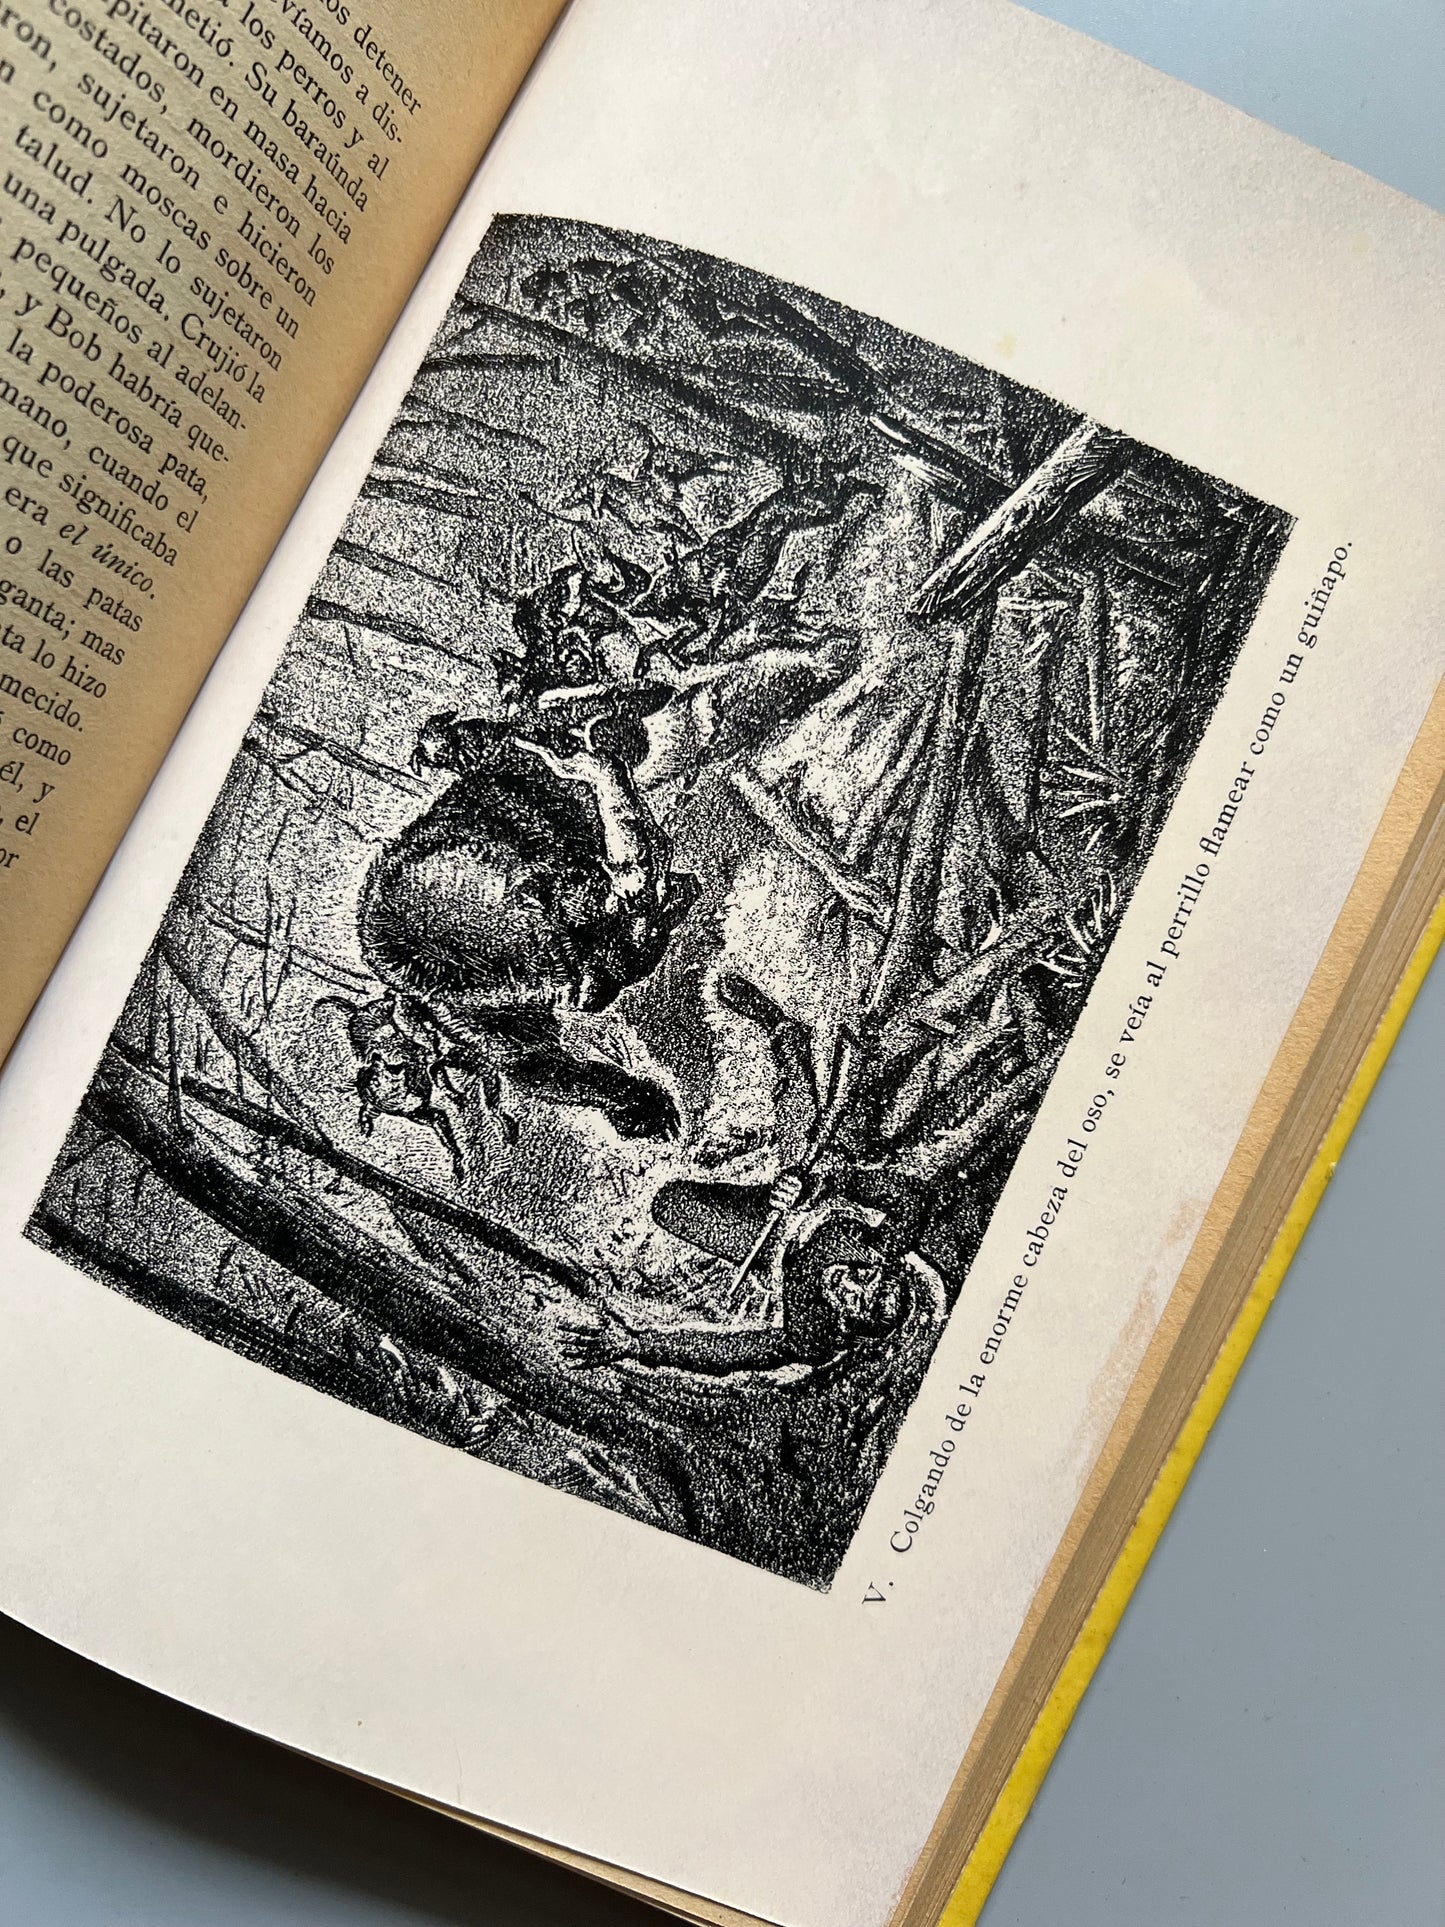 Costumbres de animales salvajes, Ernest Thompson Seton - Ediciones Leo, 1932